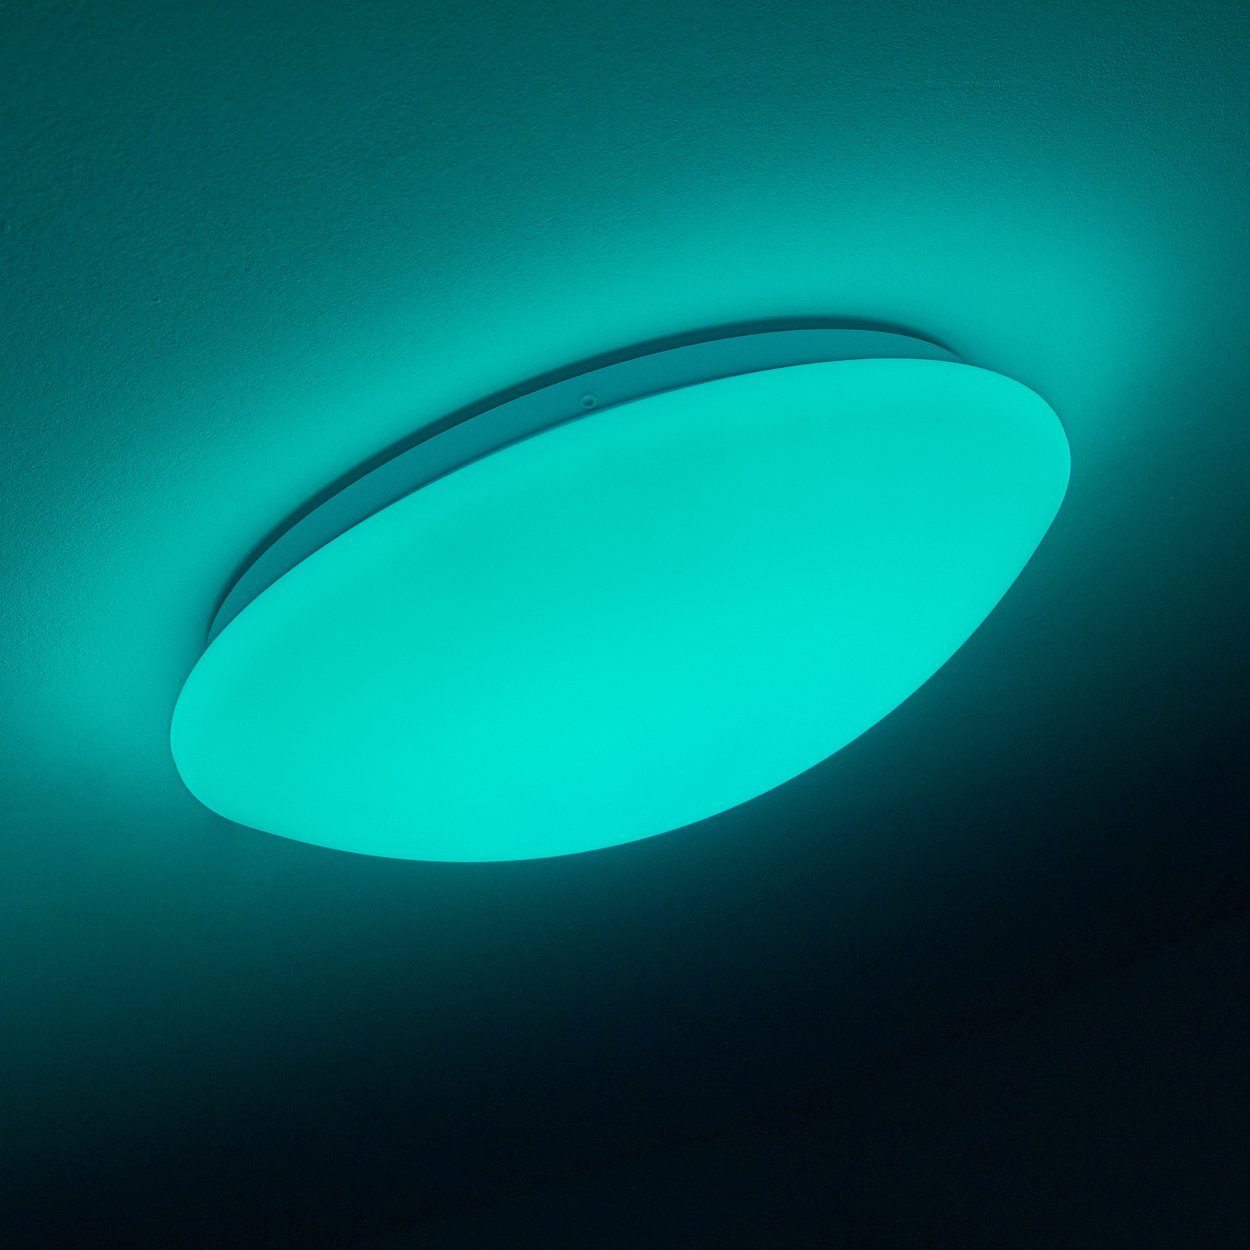 Farbwechsler LED Lumen runde Kelvin, Fernbedienung, mit Deckenlampe mit 18 dimmbar, RGB 1200 hofstein Nachtlichtfunktion, 3000 Deckenleuchte »Osini« und Watt,